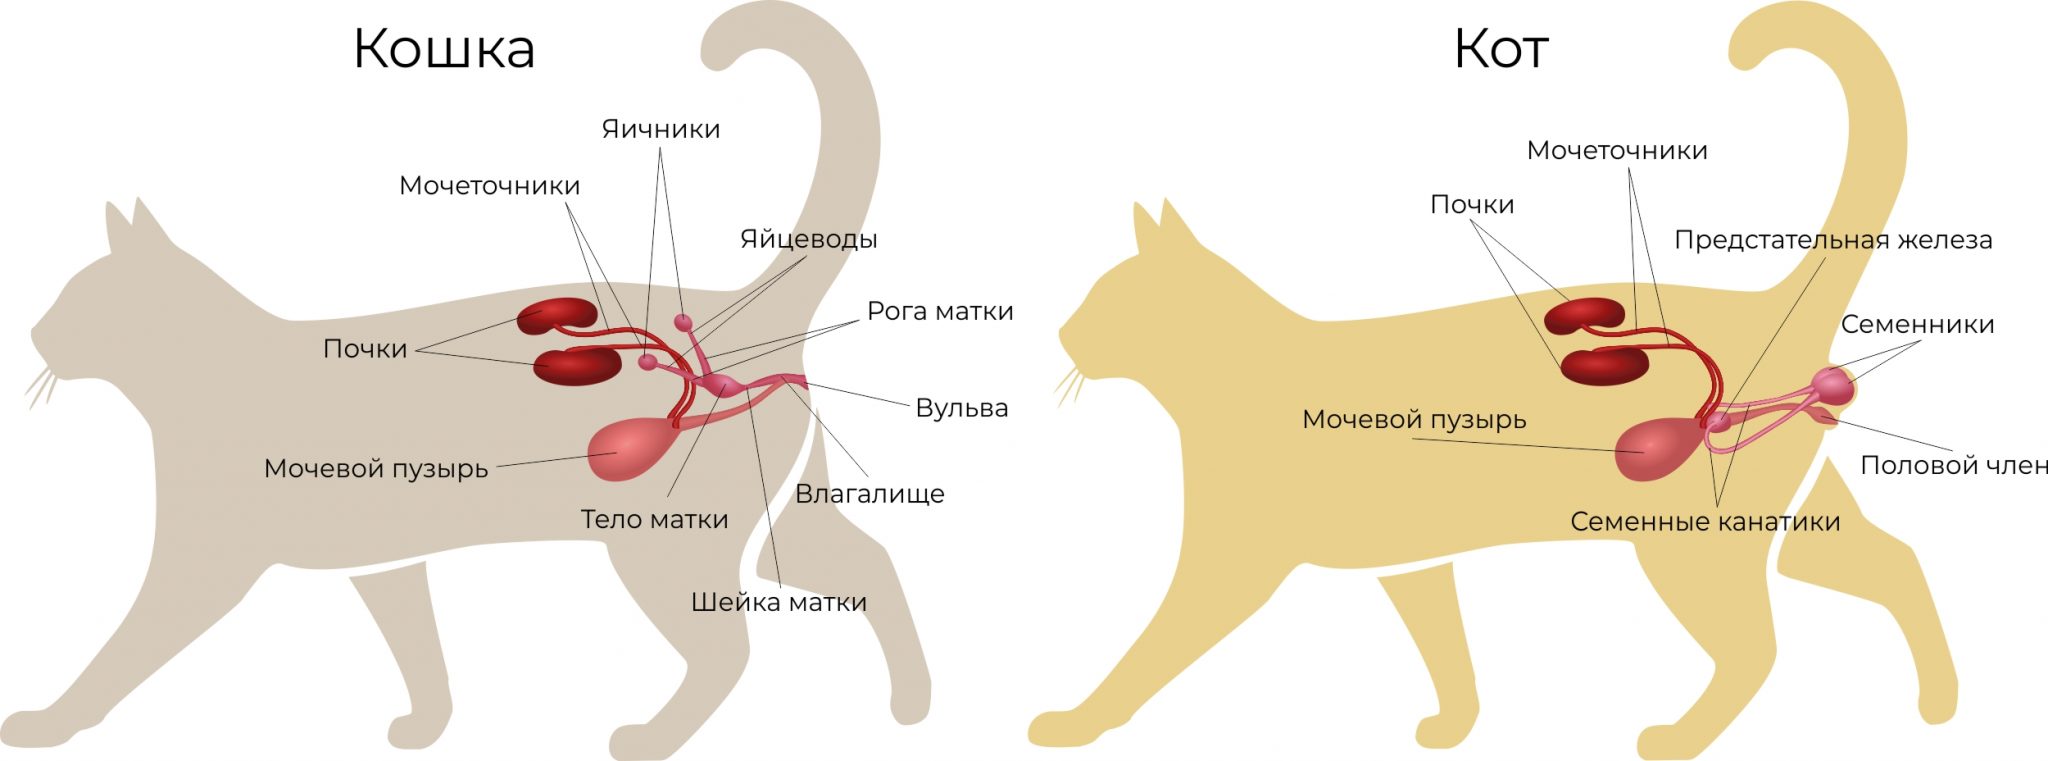 Кошка стала часто чихать: причины и опасные симптомы